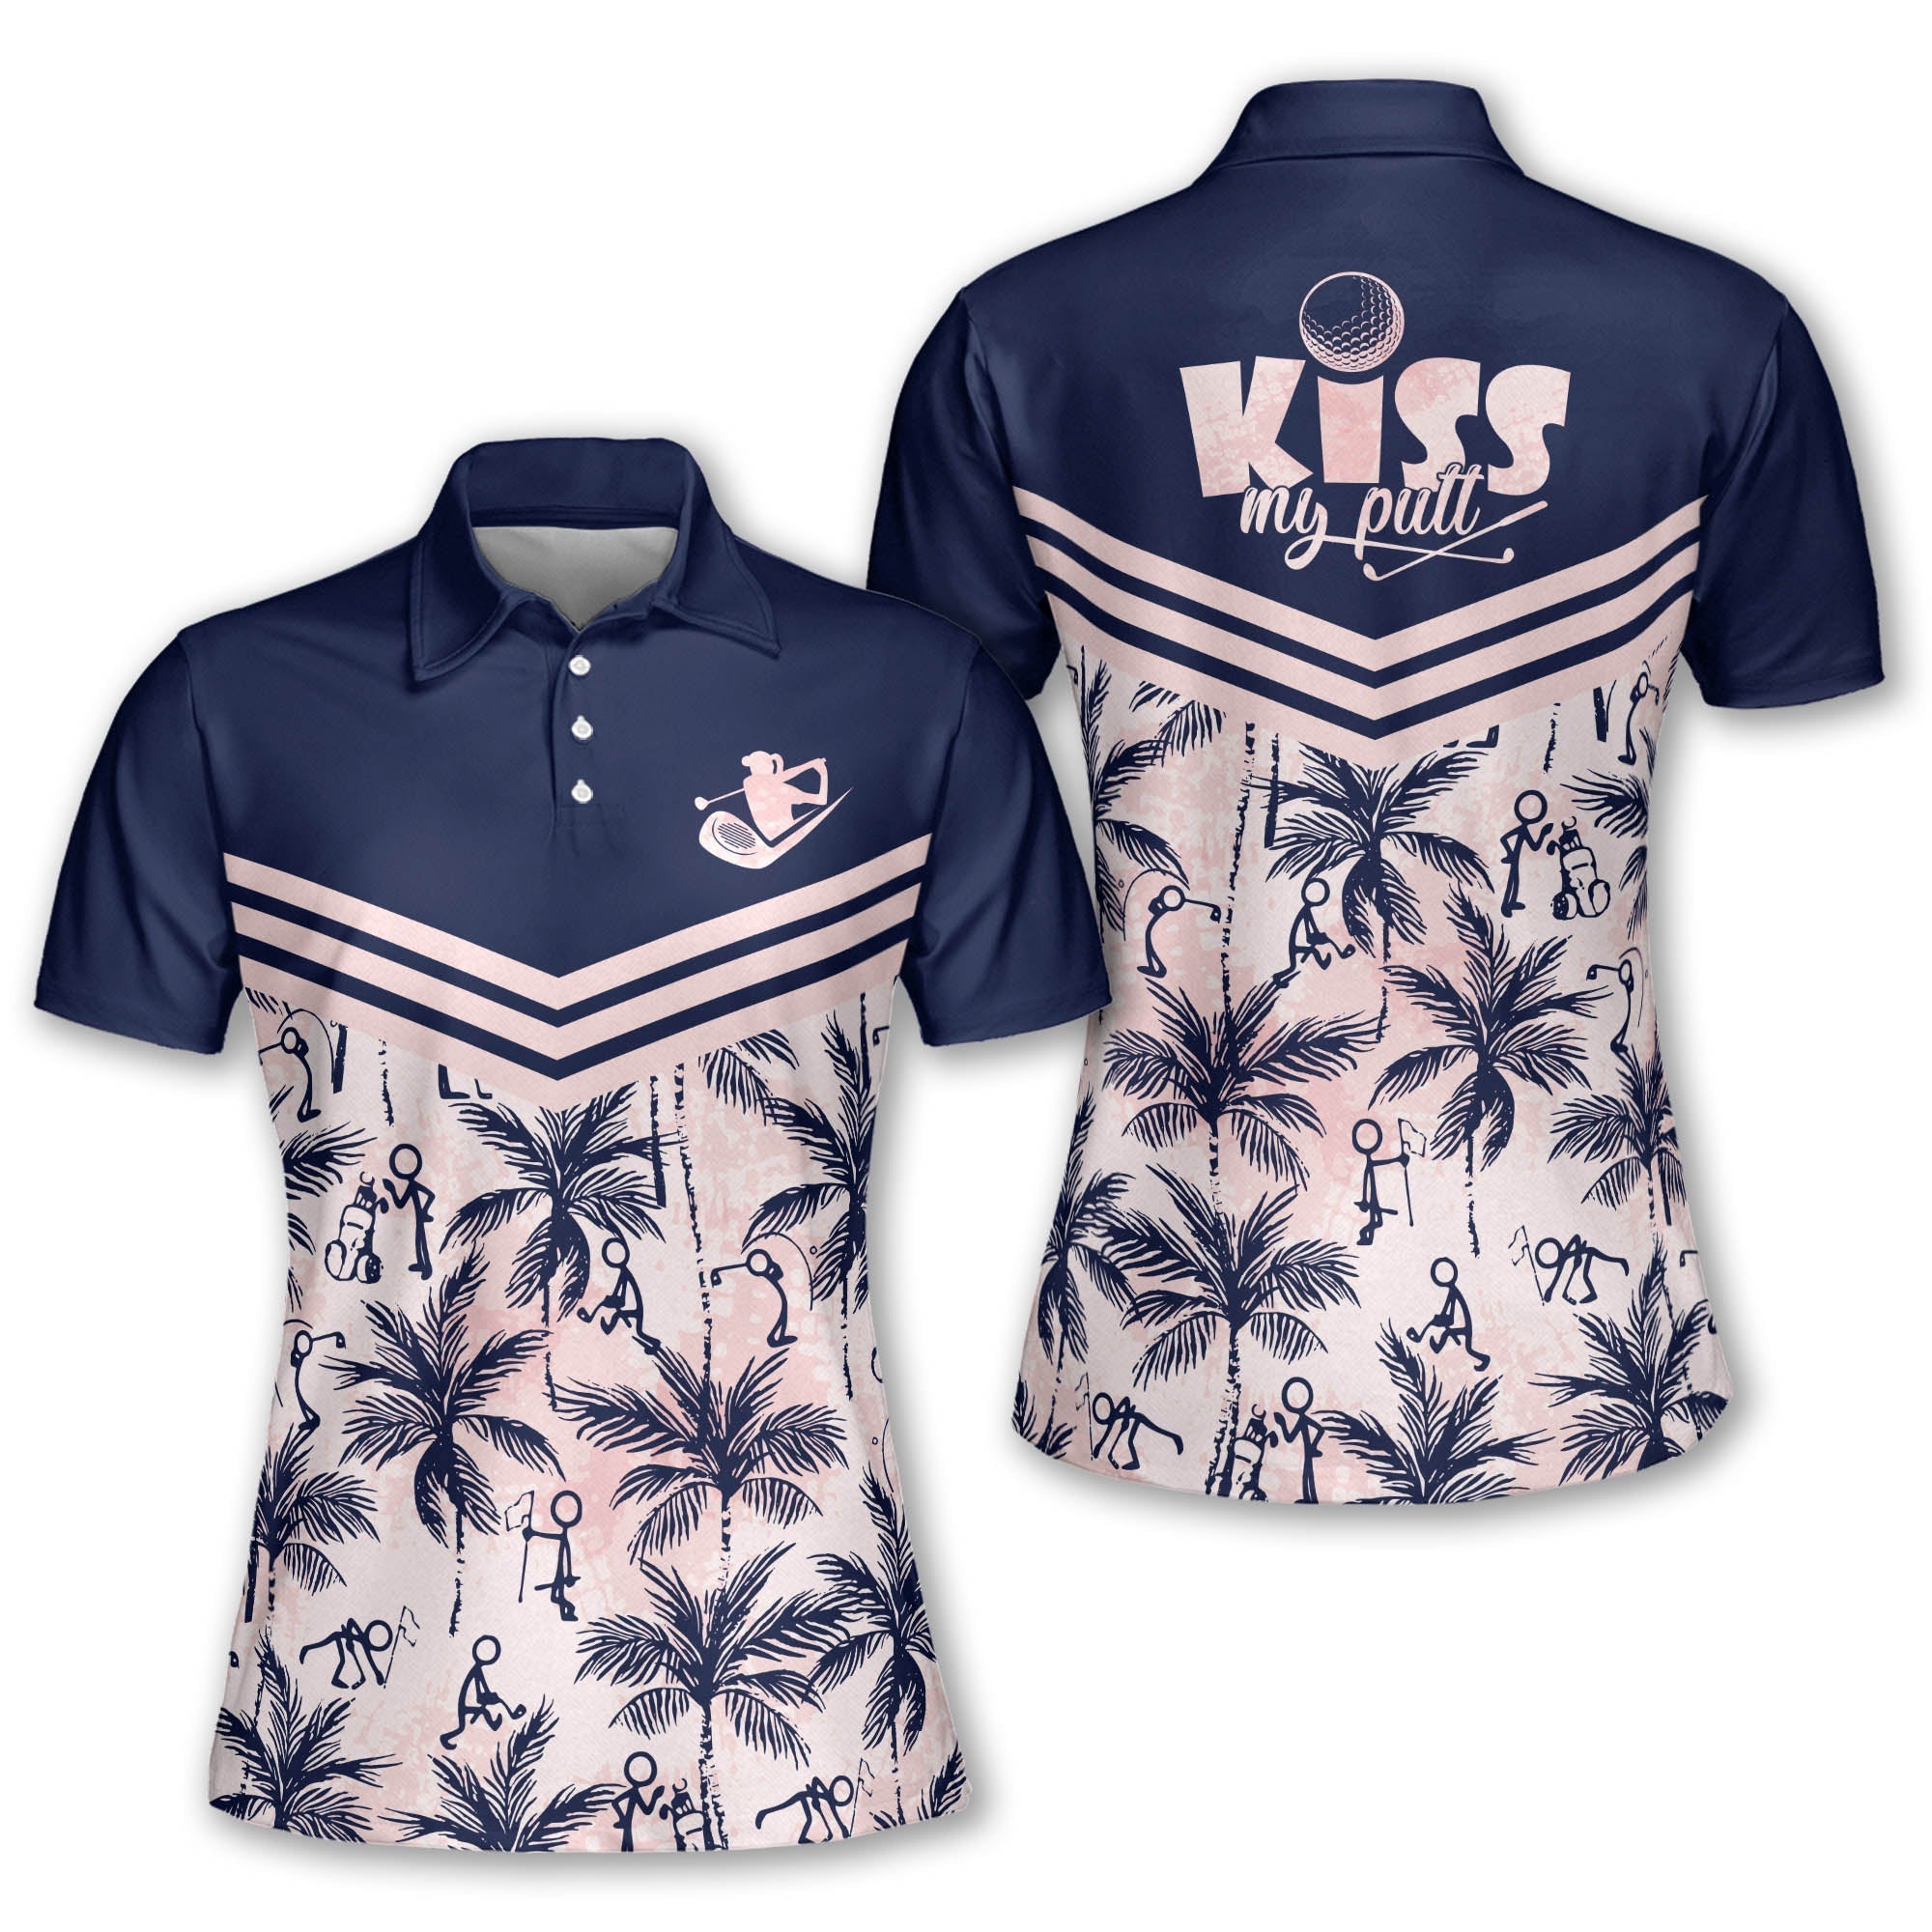 Kiss My Putt Short Sleeve Polo Shirt Sleeveless Golf Polo Shirt for women